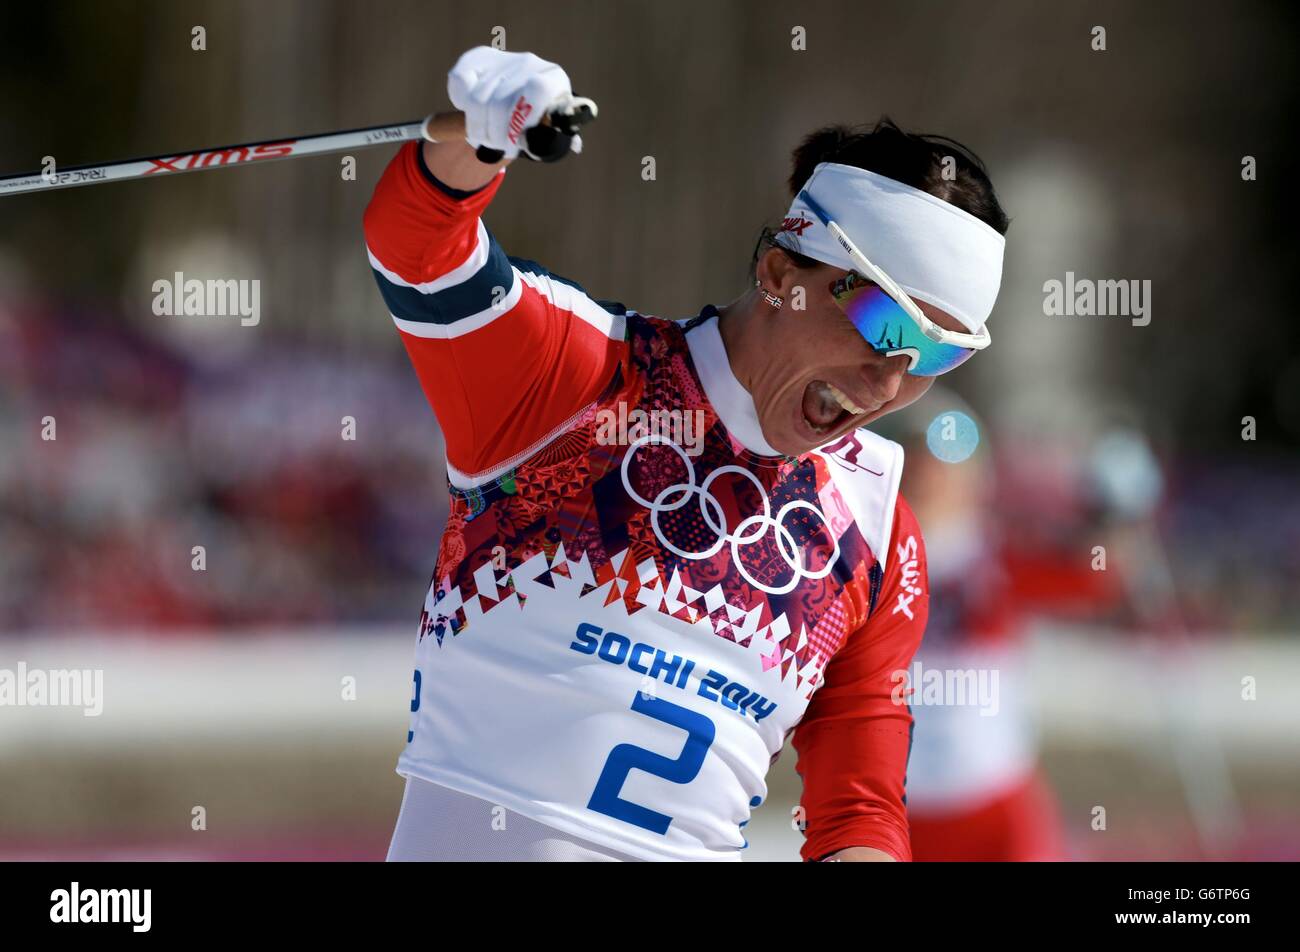 Olympische Winterspiele In Sotschi - Tag 15. Die norwegische Marit Bjoergen feiert den 30-km-Sieg der Damen bei den Olympischen Spielen in Sotschi 2014 in Sotschi, Russland. Stockfoto